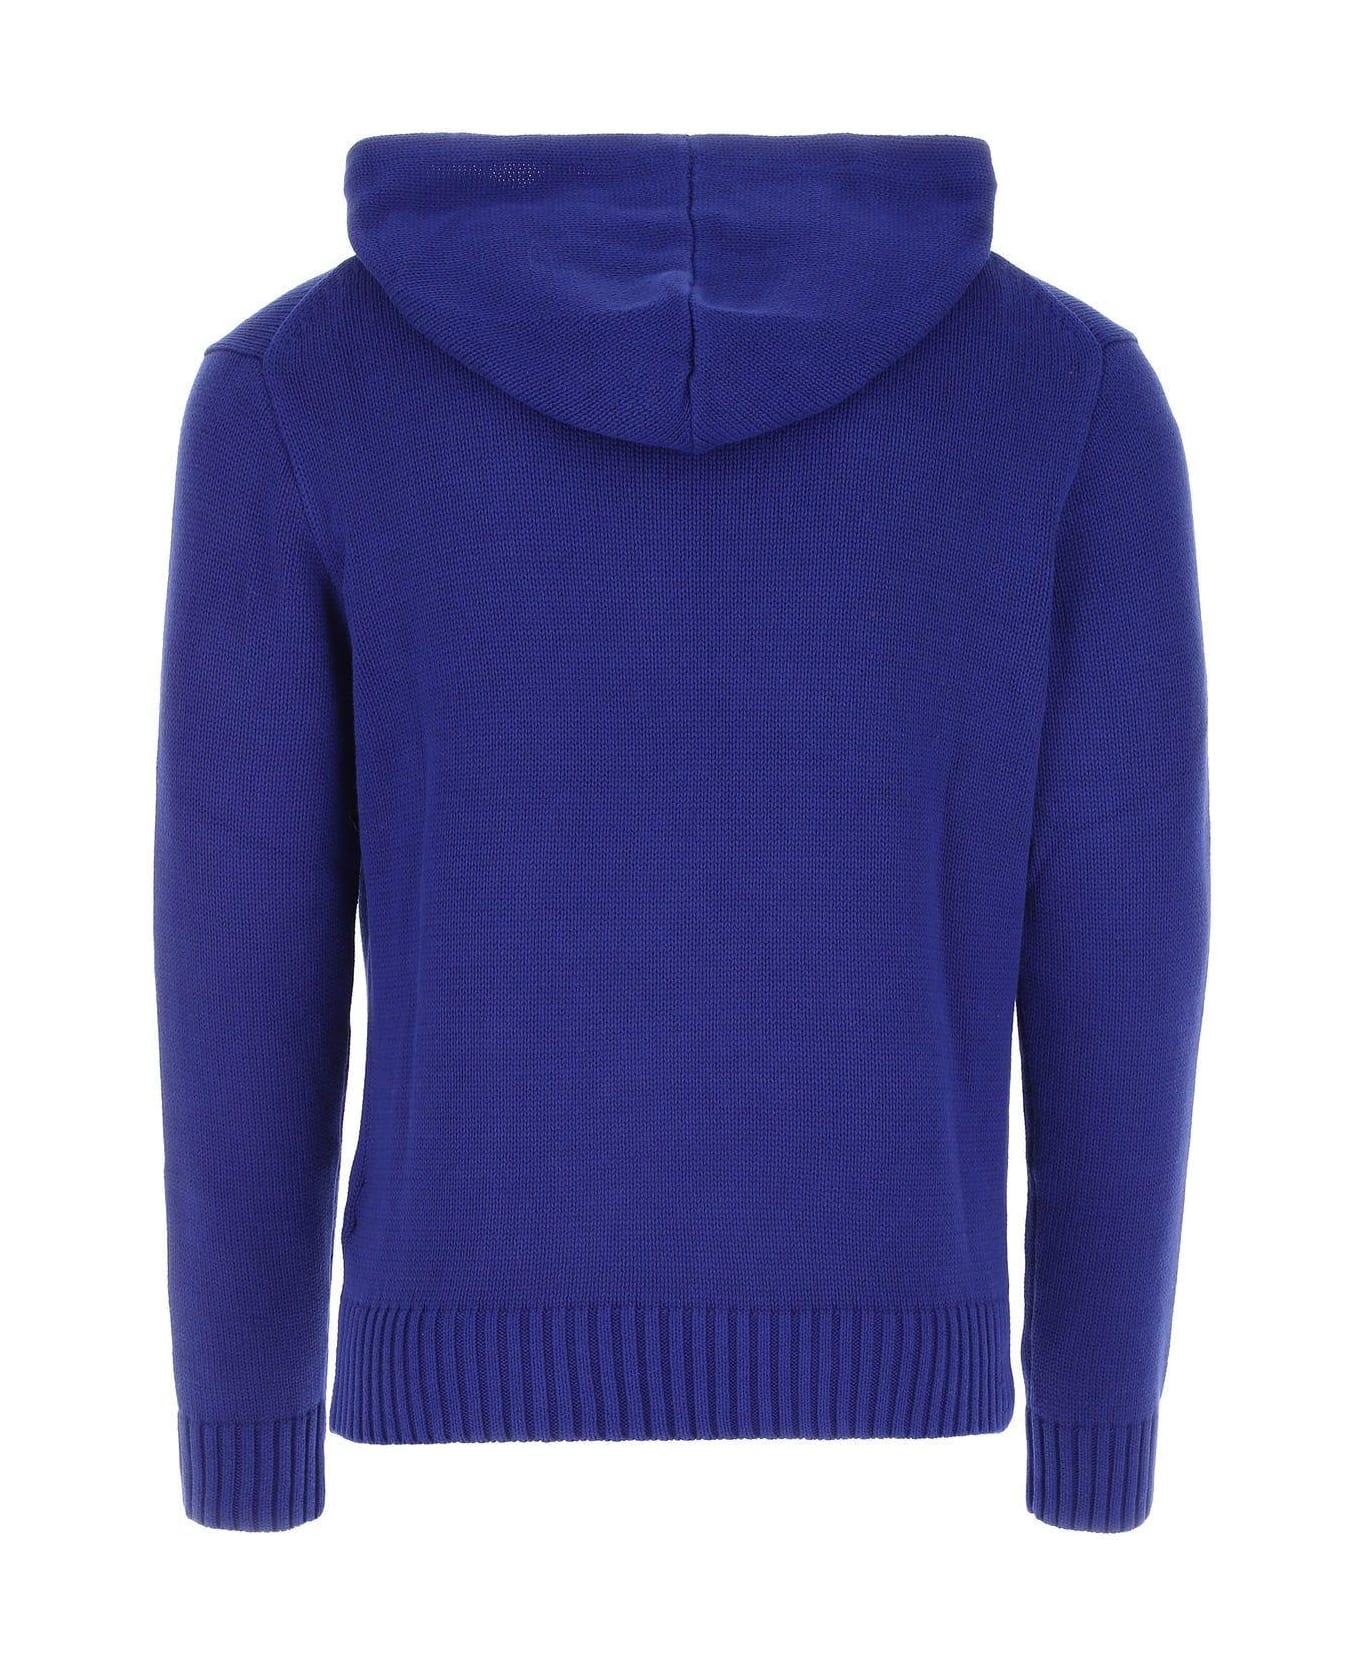 Ralph Lauren Electric Blue Cotton Sweater - ROYAL BLUE